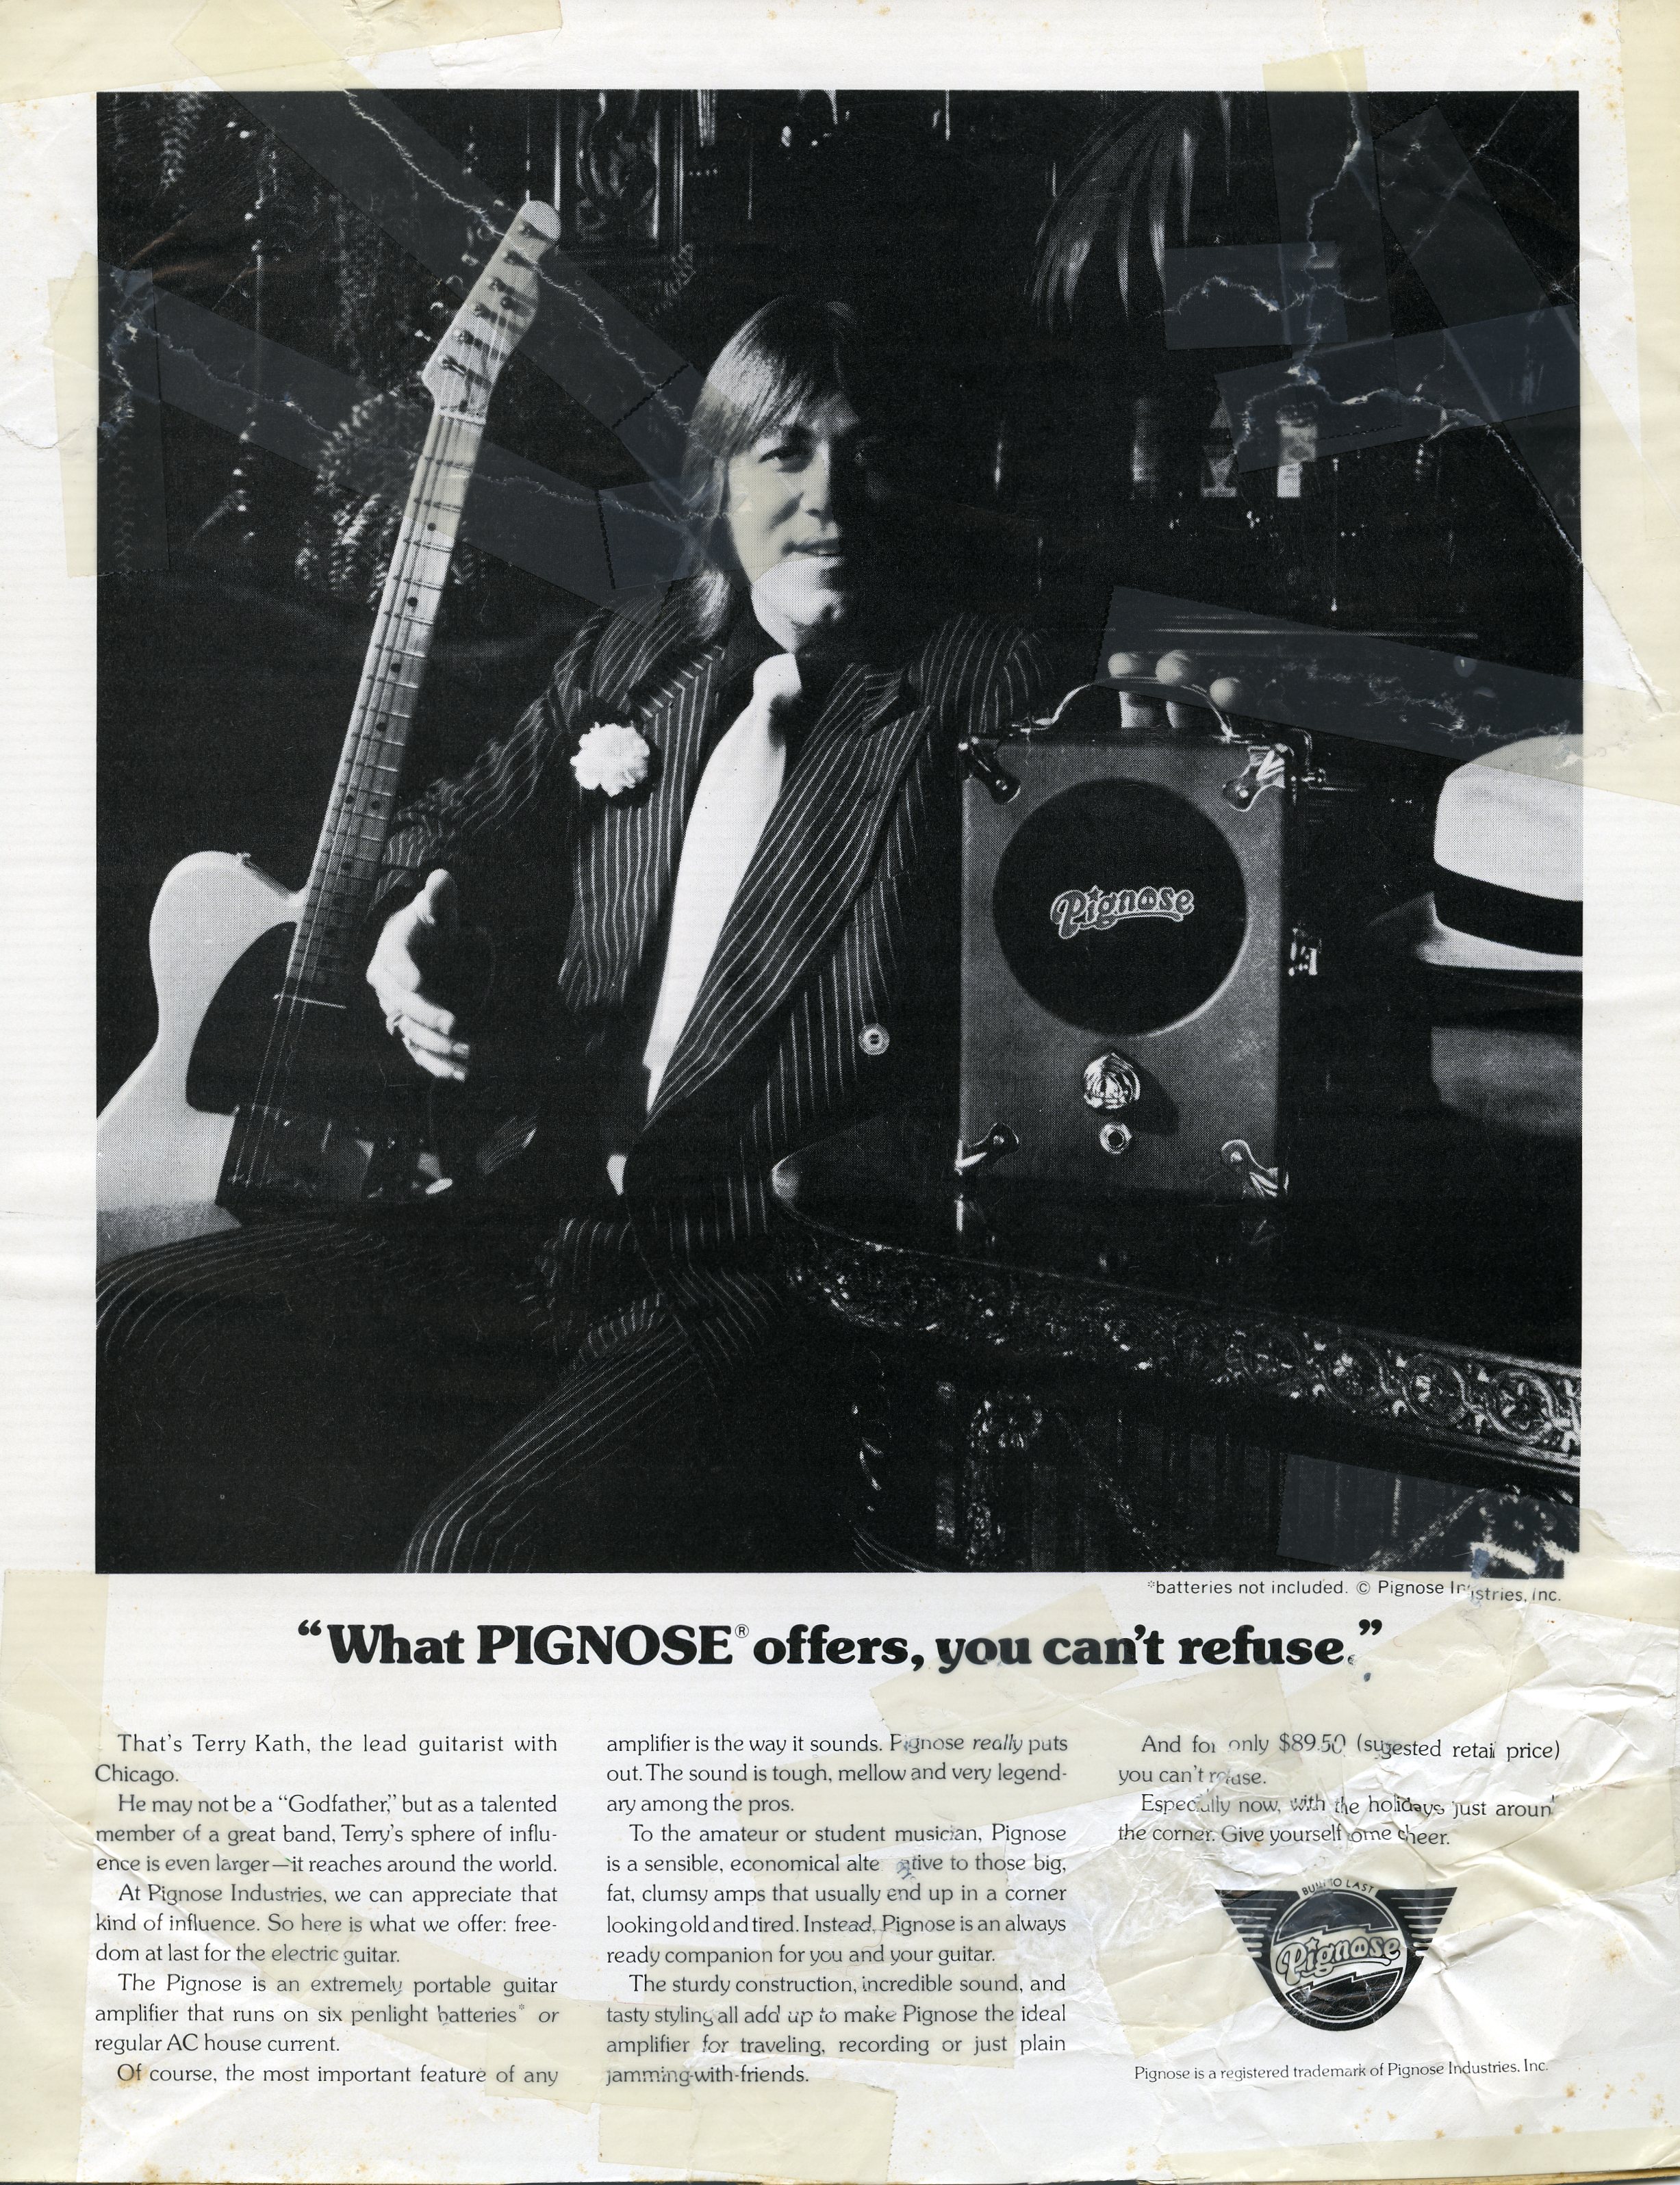 The Pignose ad